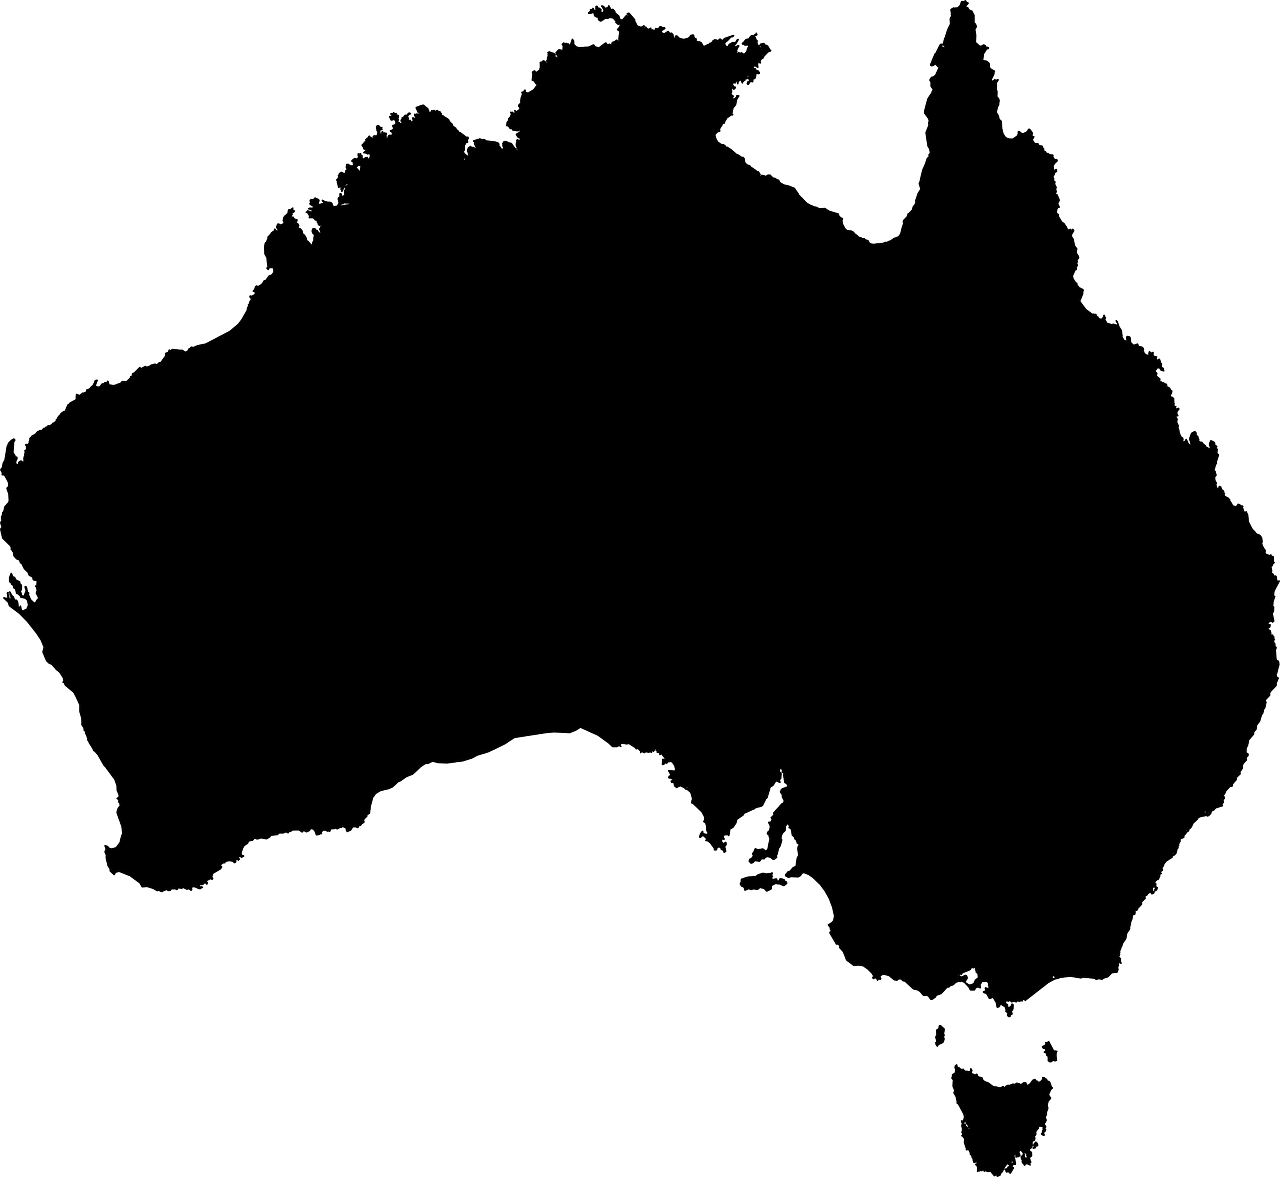 Australia, Žemynas, Geografija, Žemėlapis, Kartografija, Atlasas, Pakrantė, Tasmanija, Administracinis, Tarptautinis